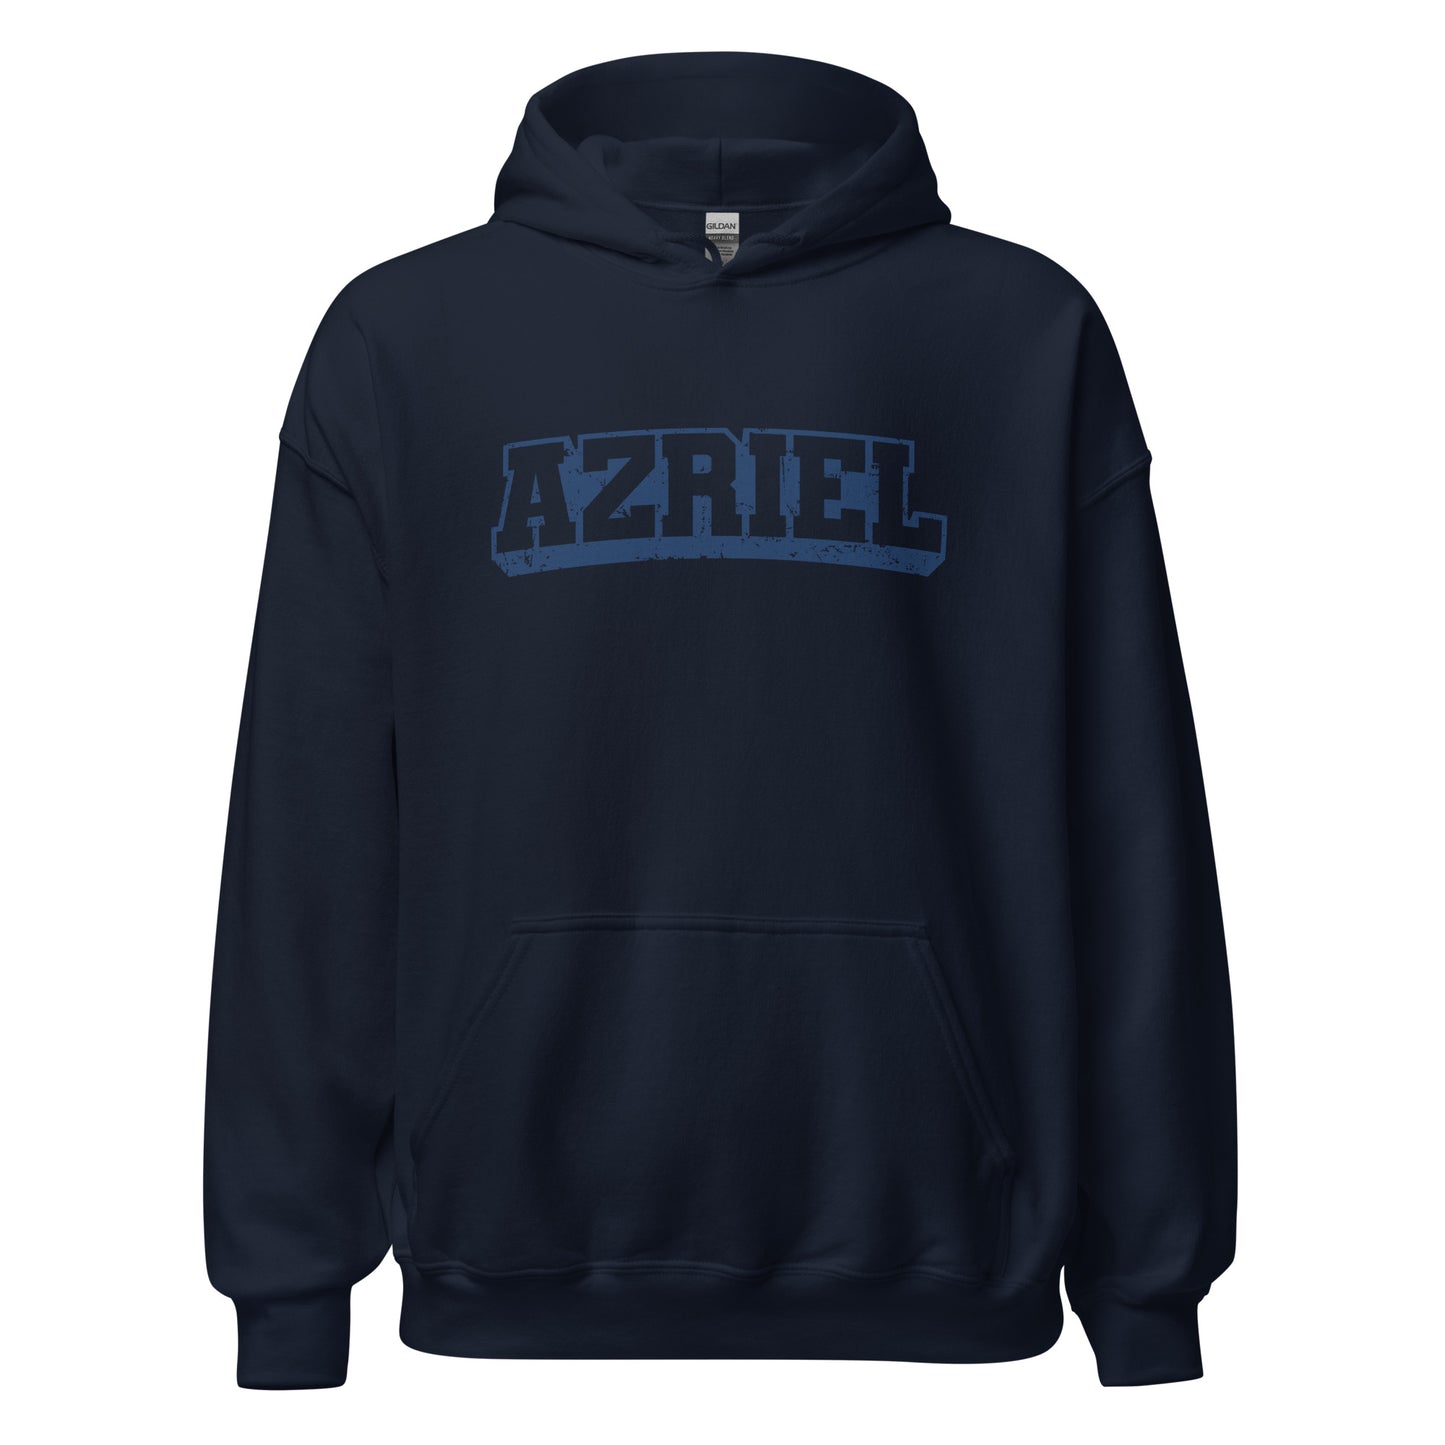 azriel hoodie